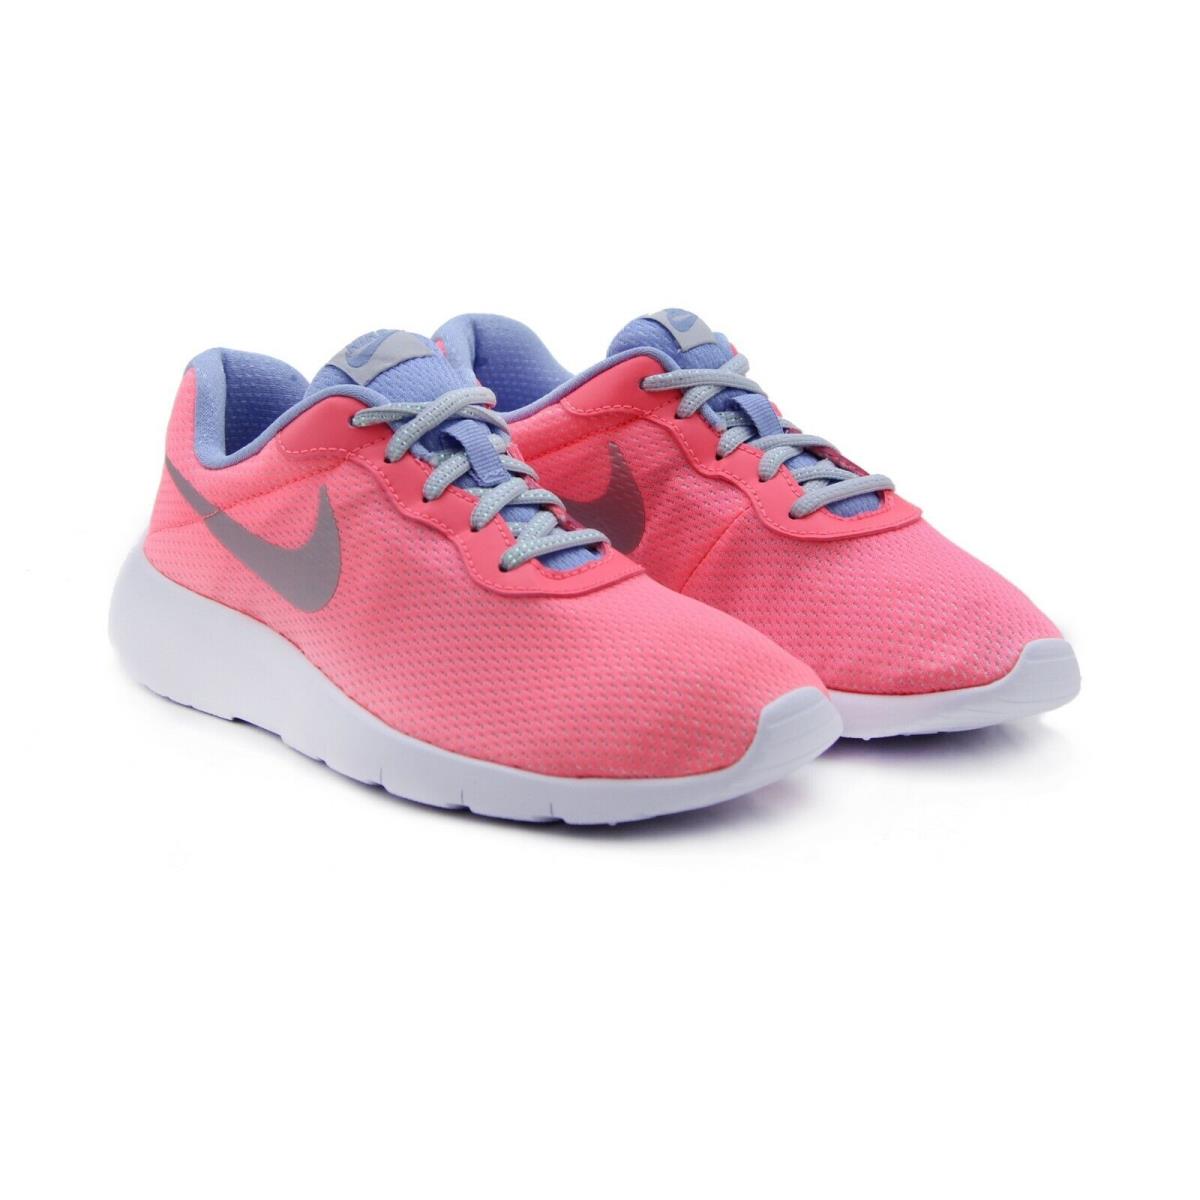 Nike Tanjun SE GS Youth Size: 5 Running Shoes 859617-600 Big Kid`s - Pink